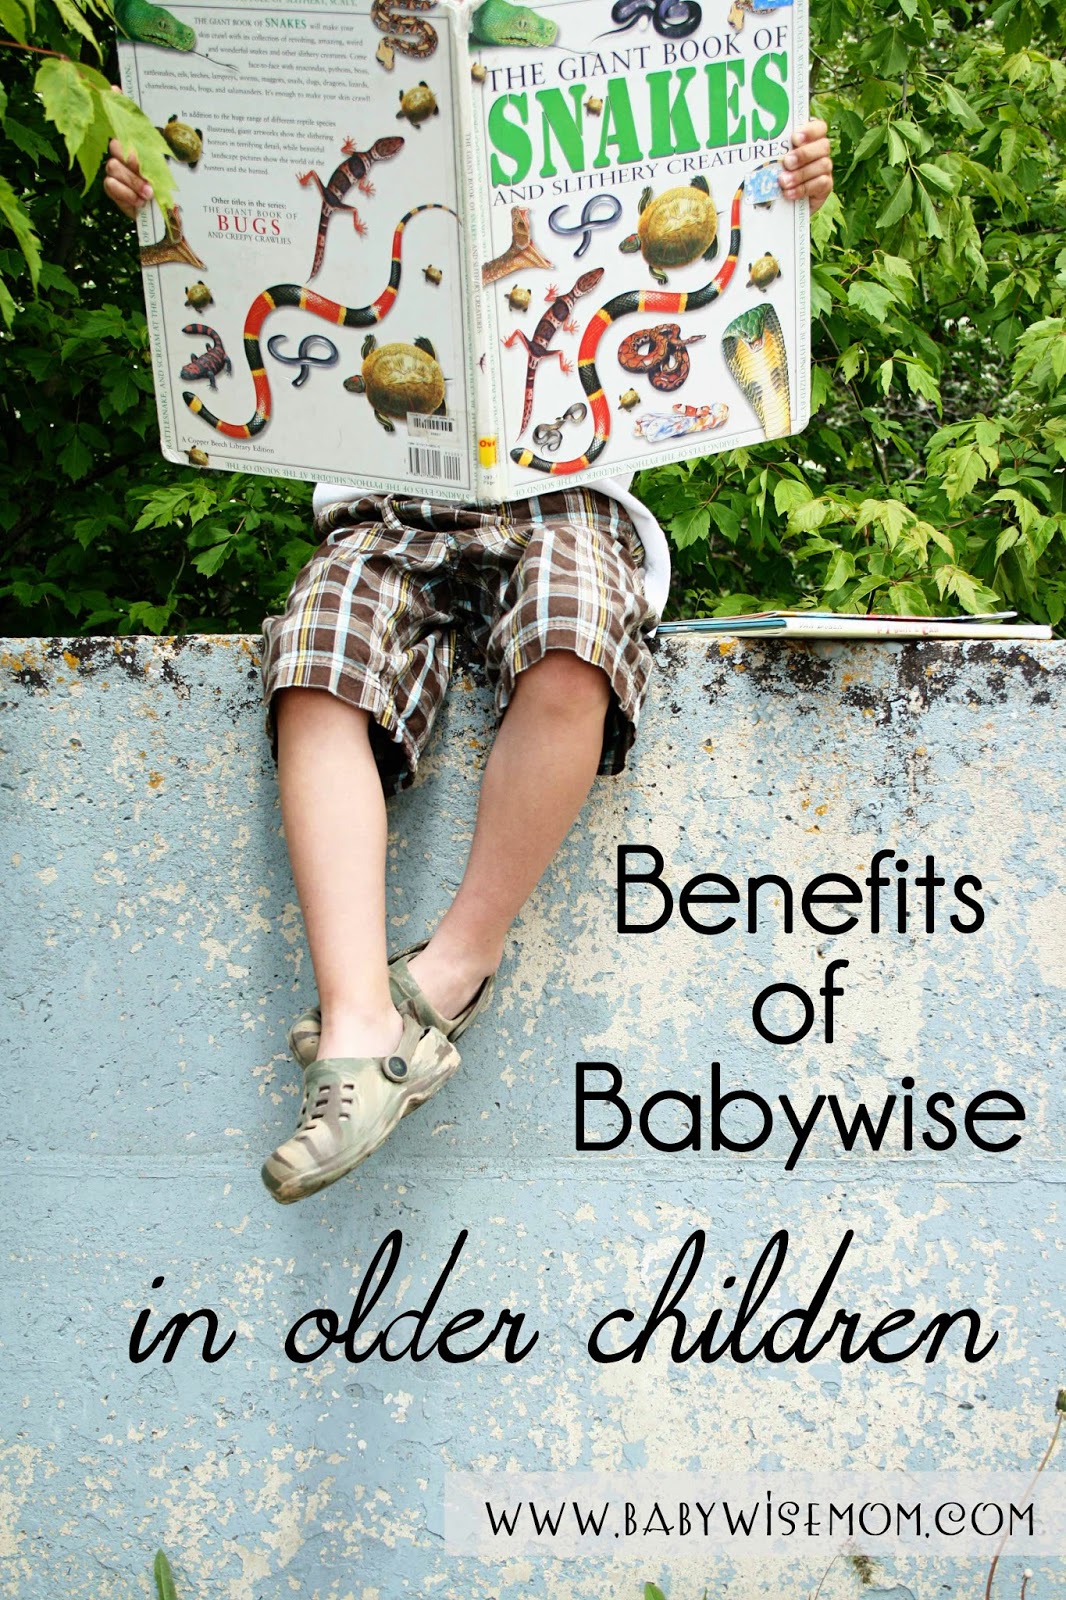  Benefits of Babywise in older children